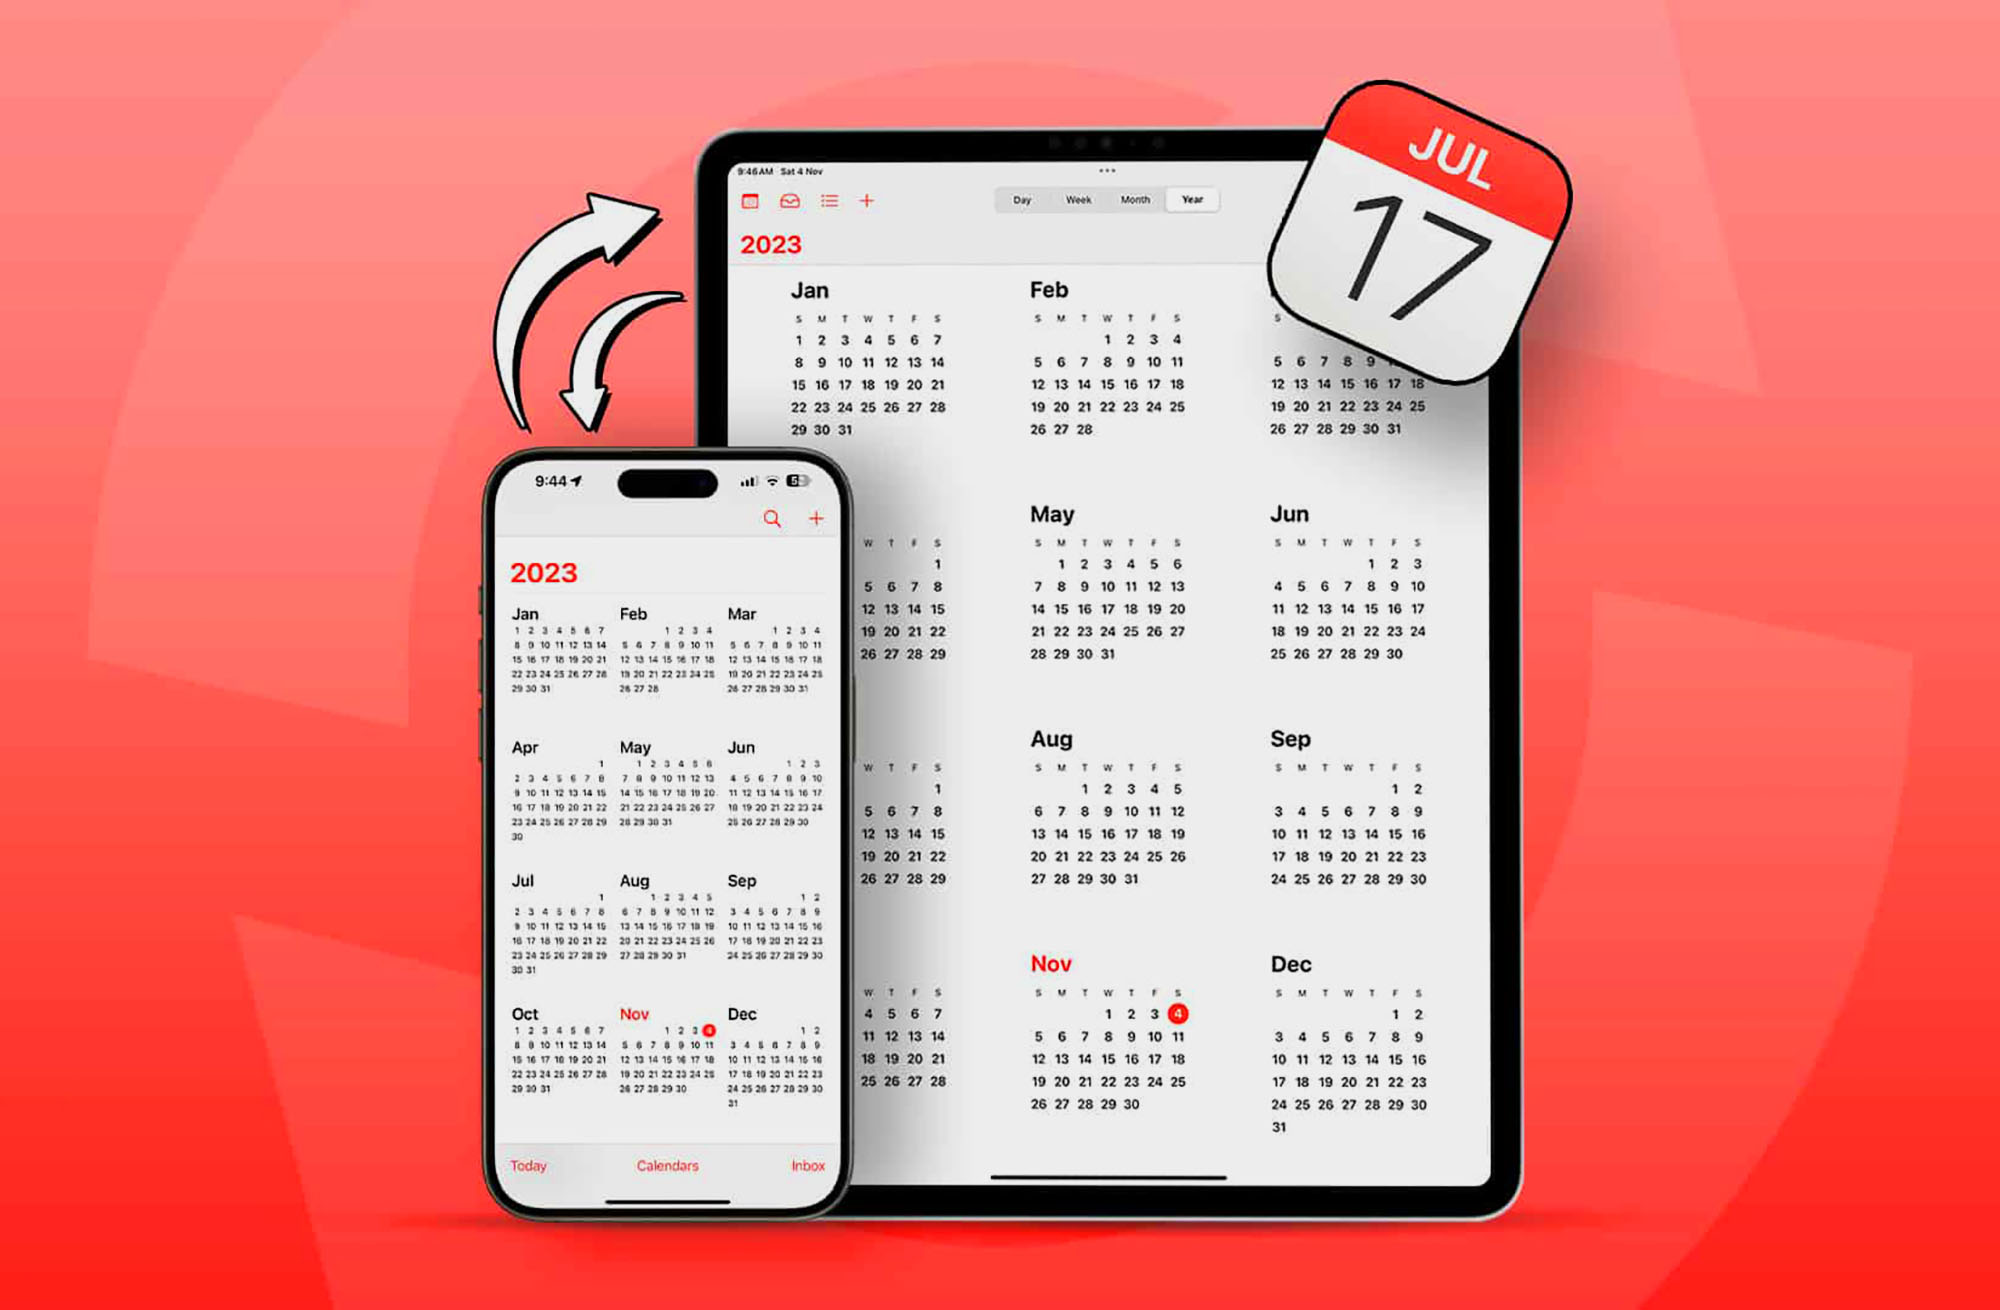 Как создать общий календарь на iPhone или iPad. Например, для семьи или  коллег на работе